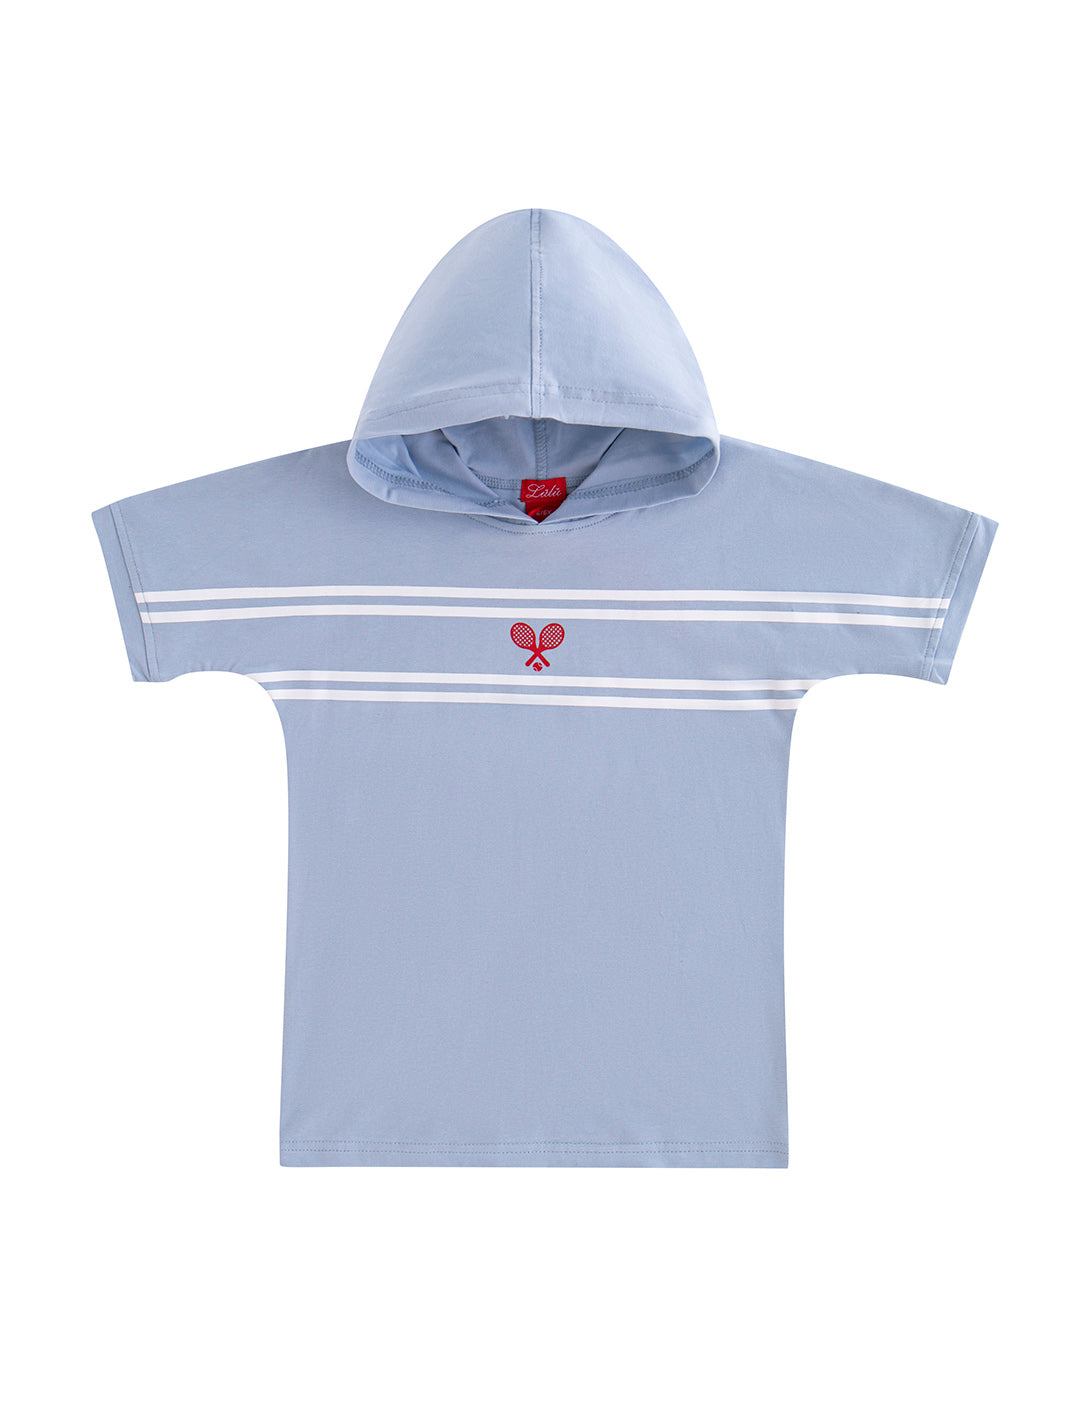 Hooded Tennis Print Short Sleeve Top